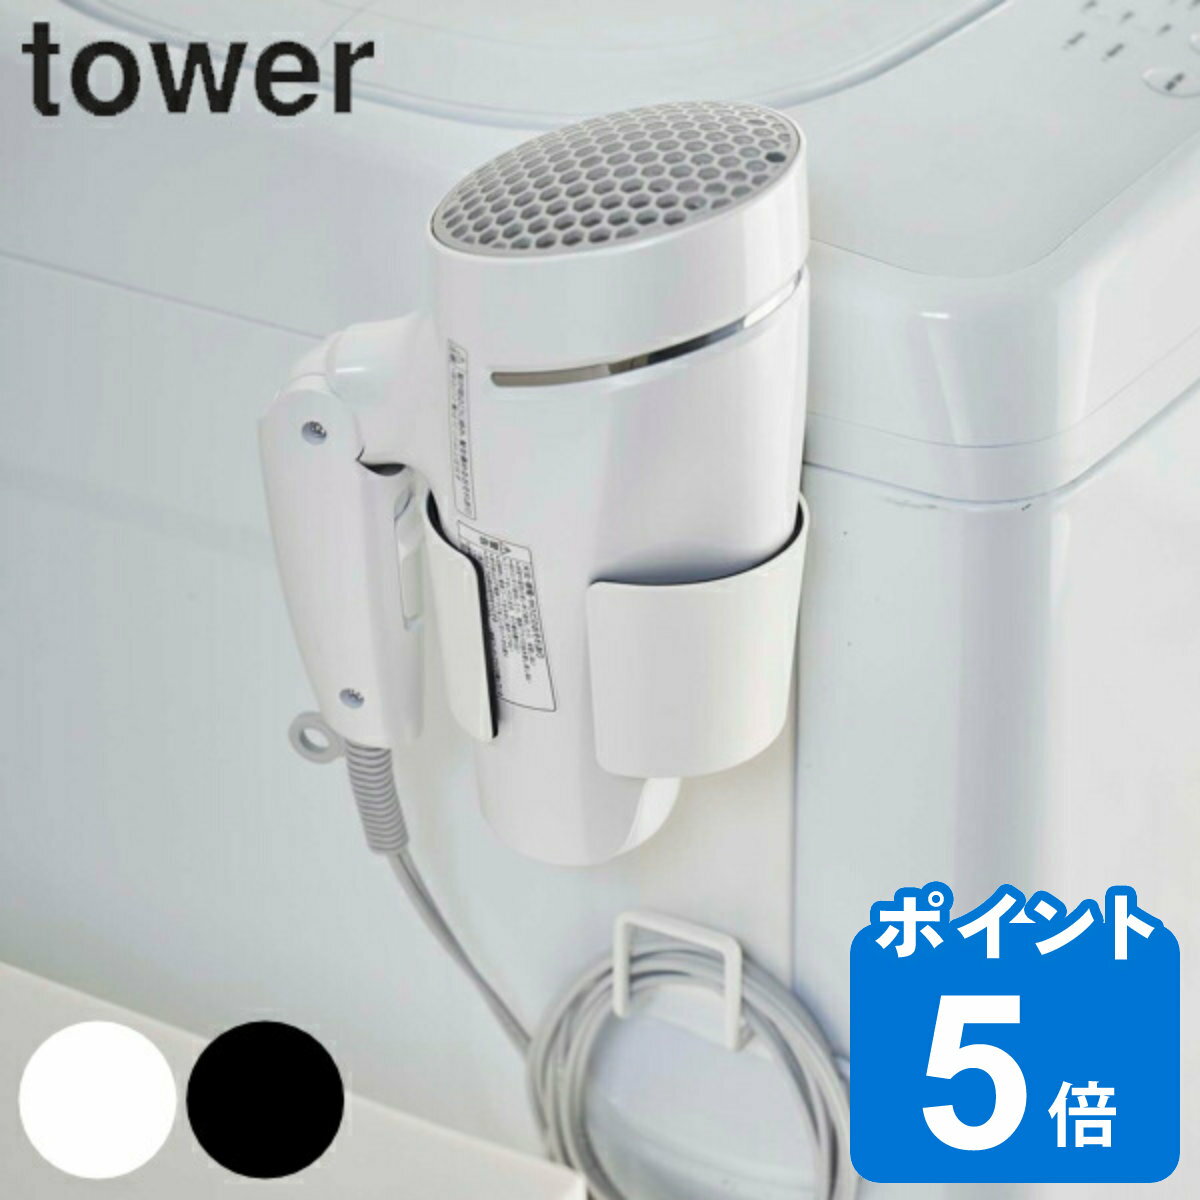 山崎実業 tower マグネットドライヤーホルダー タワー マグネット 強力マグネット （ タワーシリーズ ドライヤー 収…